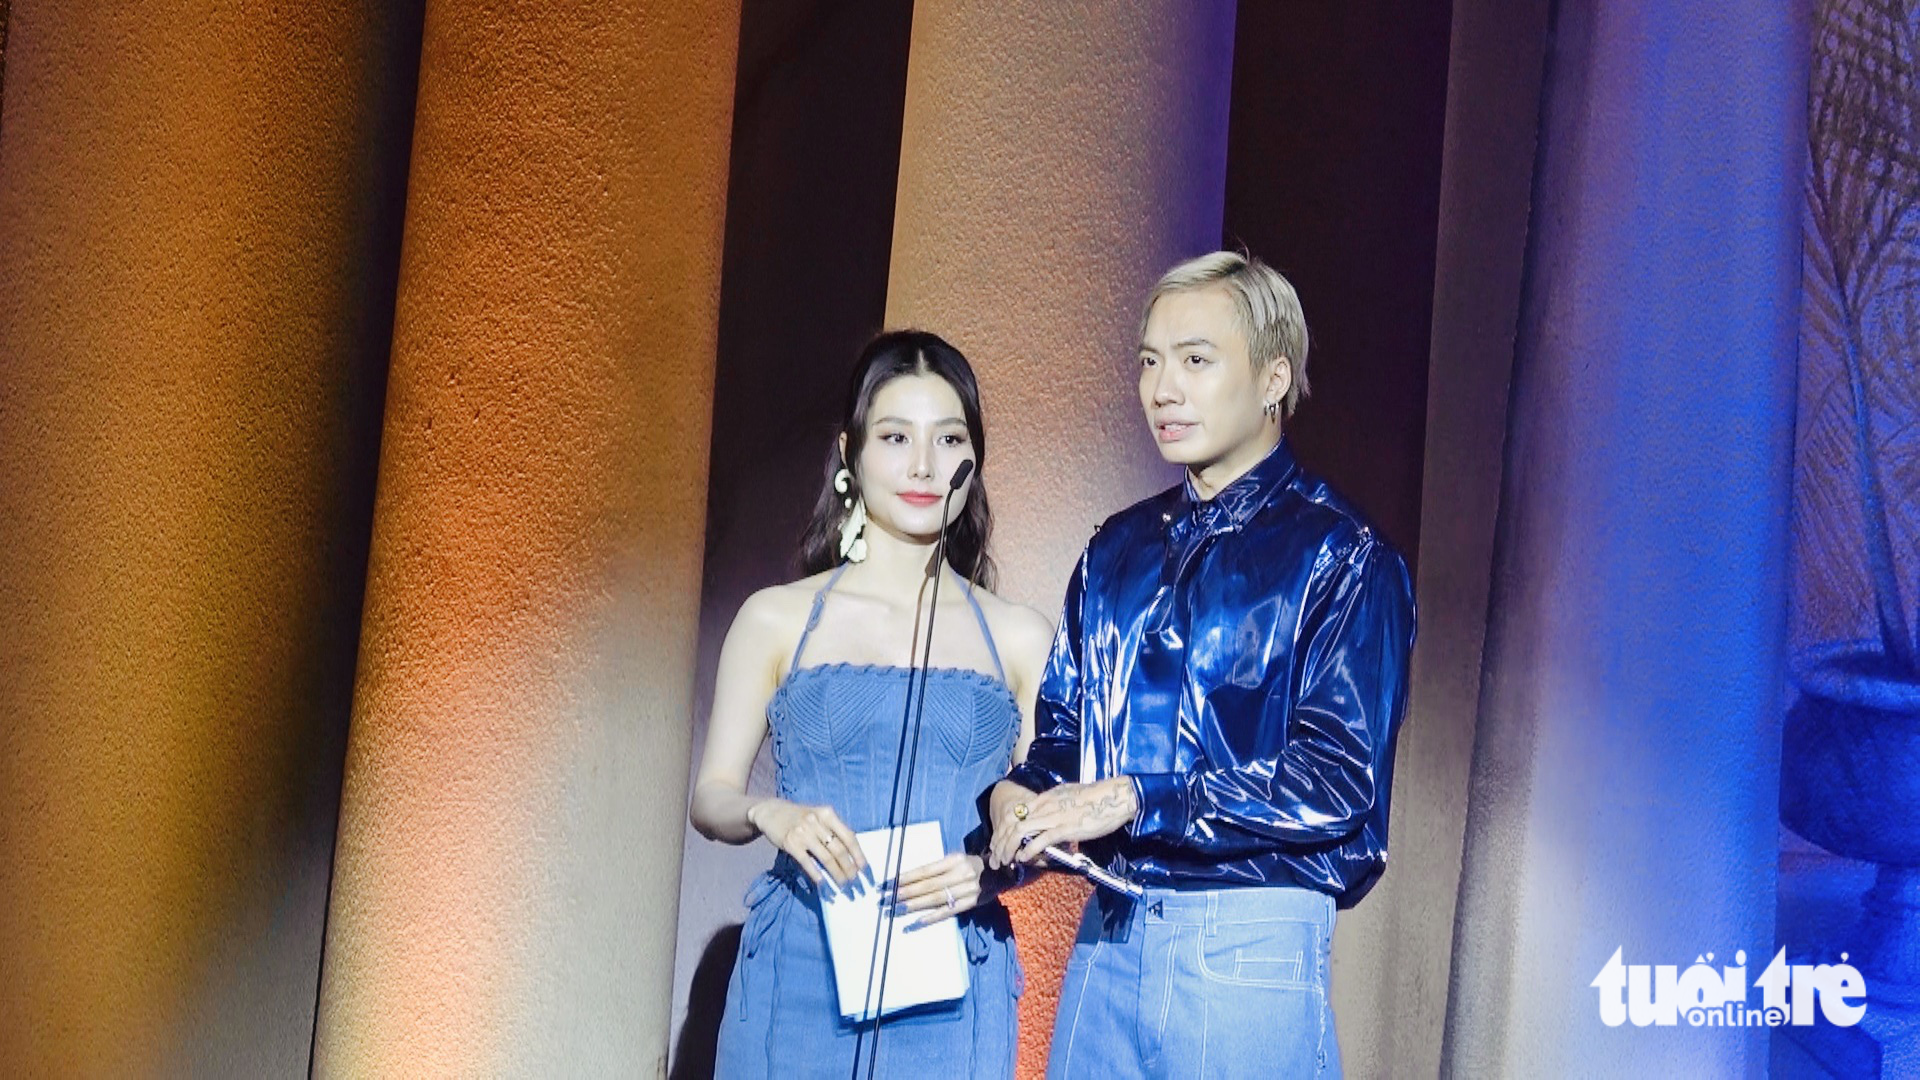 Á hậu Thảo Nhi Lê, nhà thiết kế Phan Đăng Hoàng được vinh danh tại SR Fashion Awards 2022 - Ảnh 2.